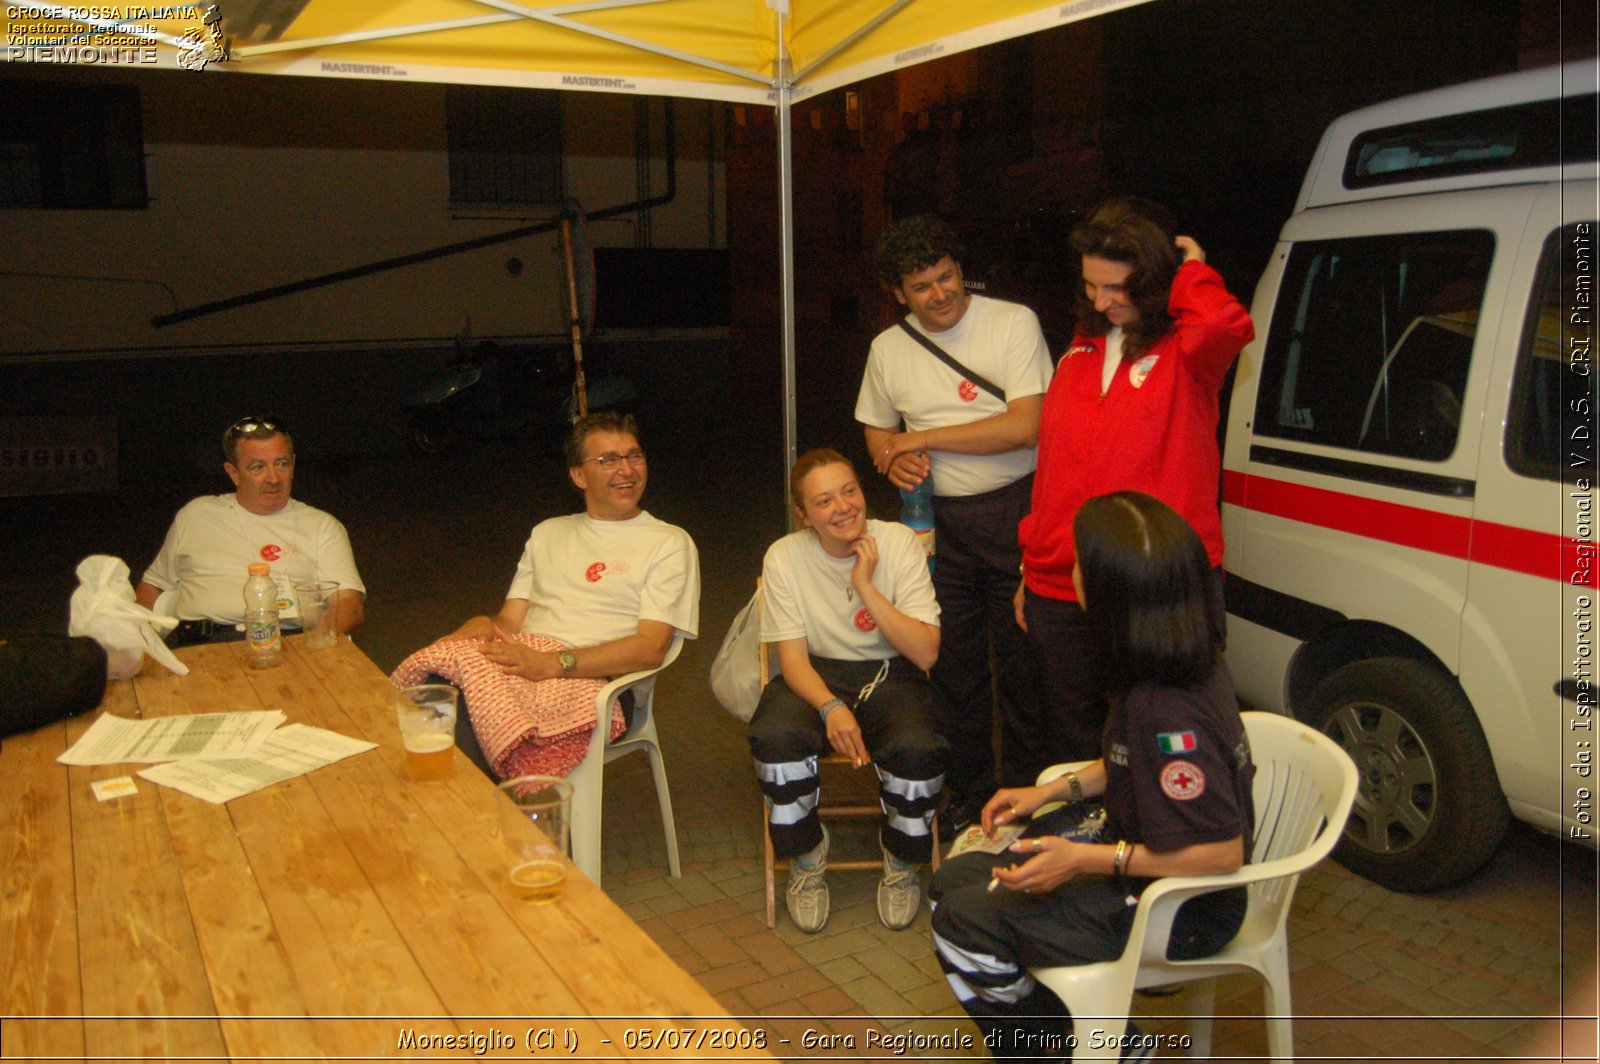 Monesiglio (CN)  - 05/07/2008 - Gara Regionale di Primo Soccorso -  Croce Rossa Italiana - Ispettorato Regionale Volontari del Soccorso Piemonte